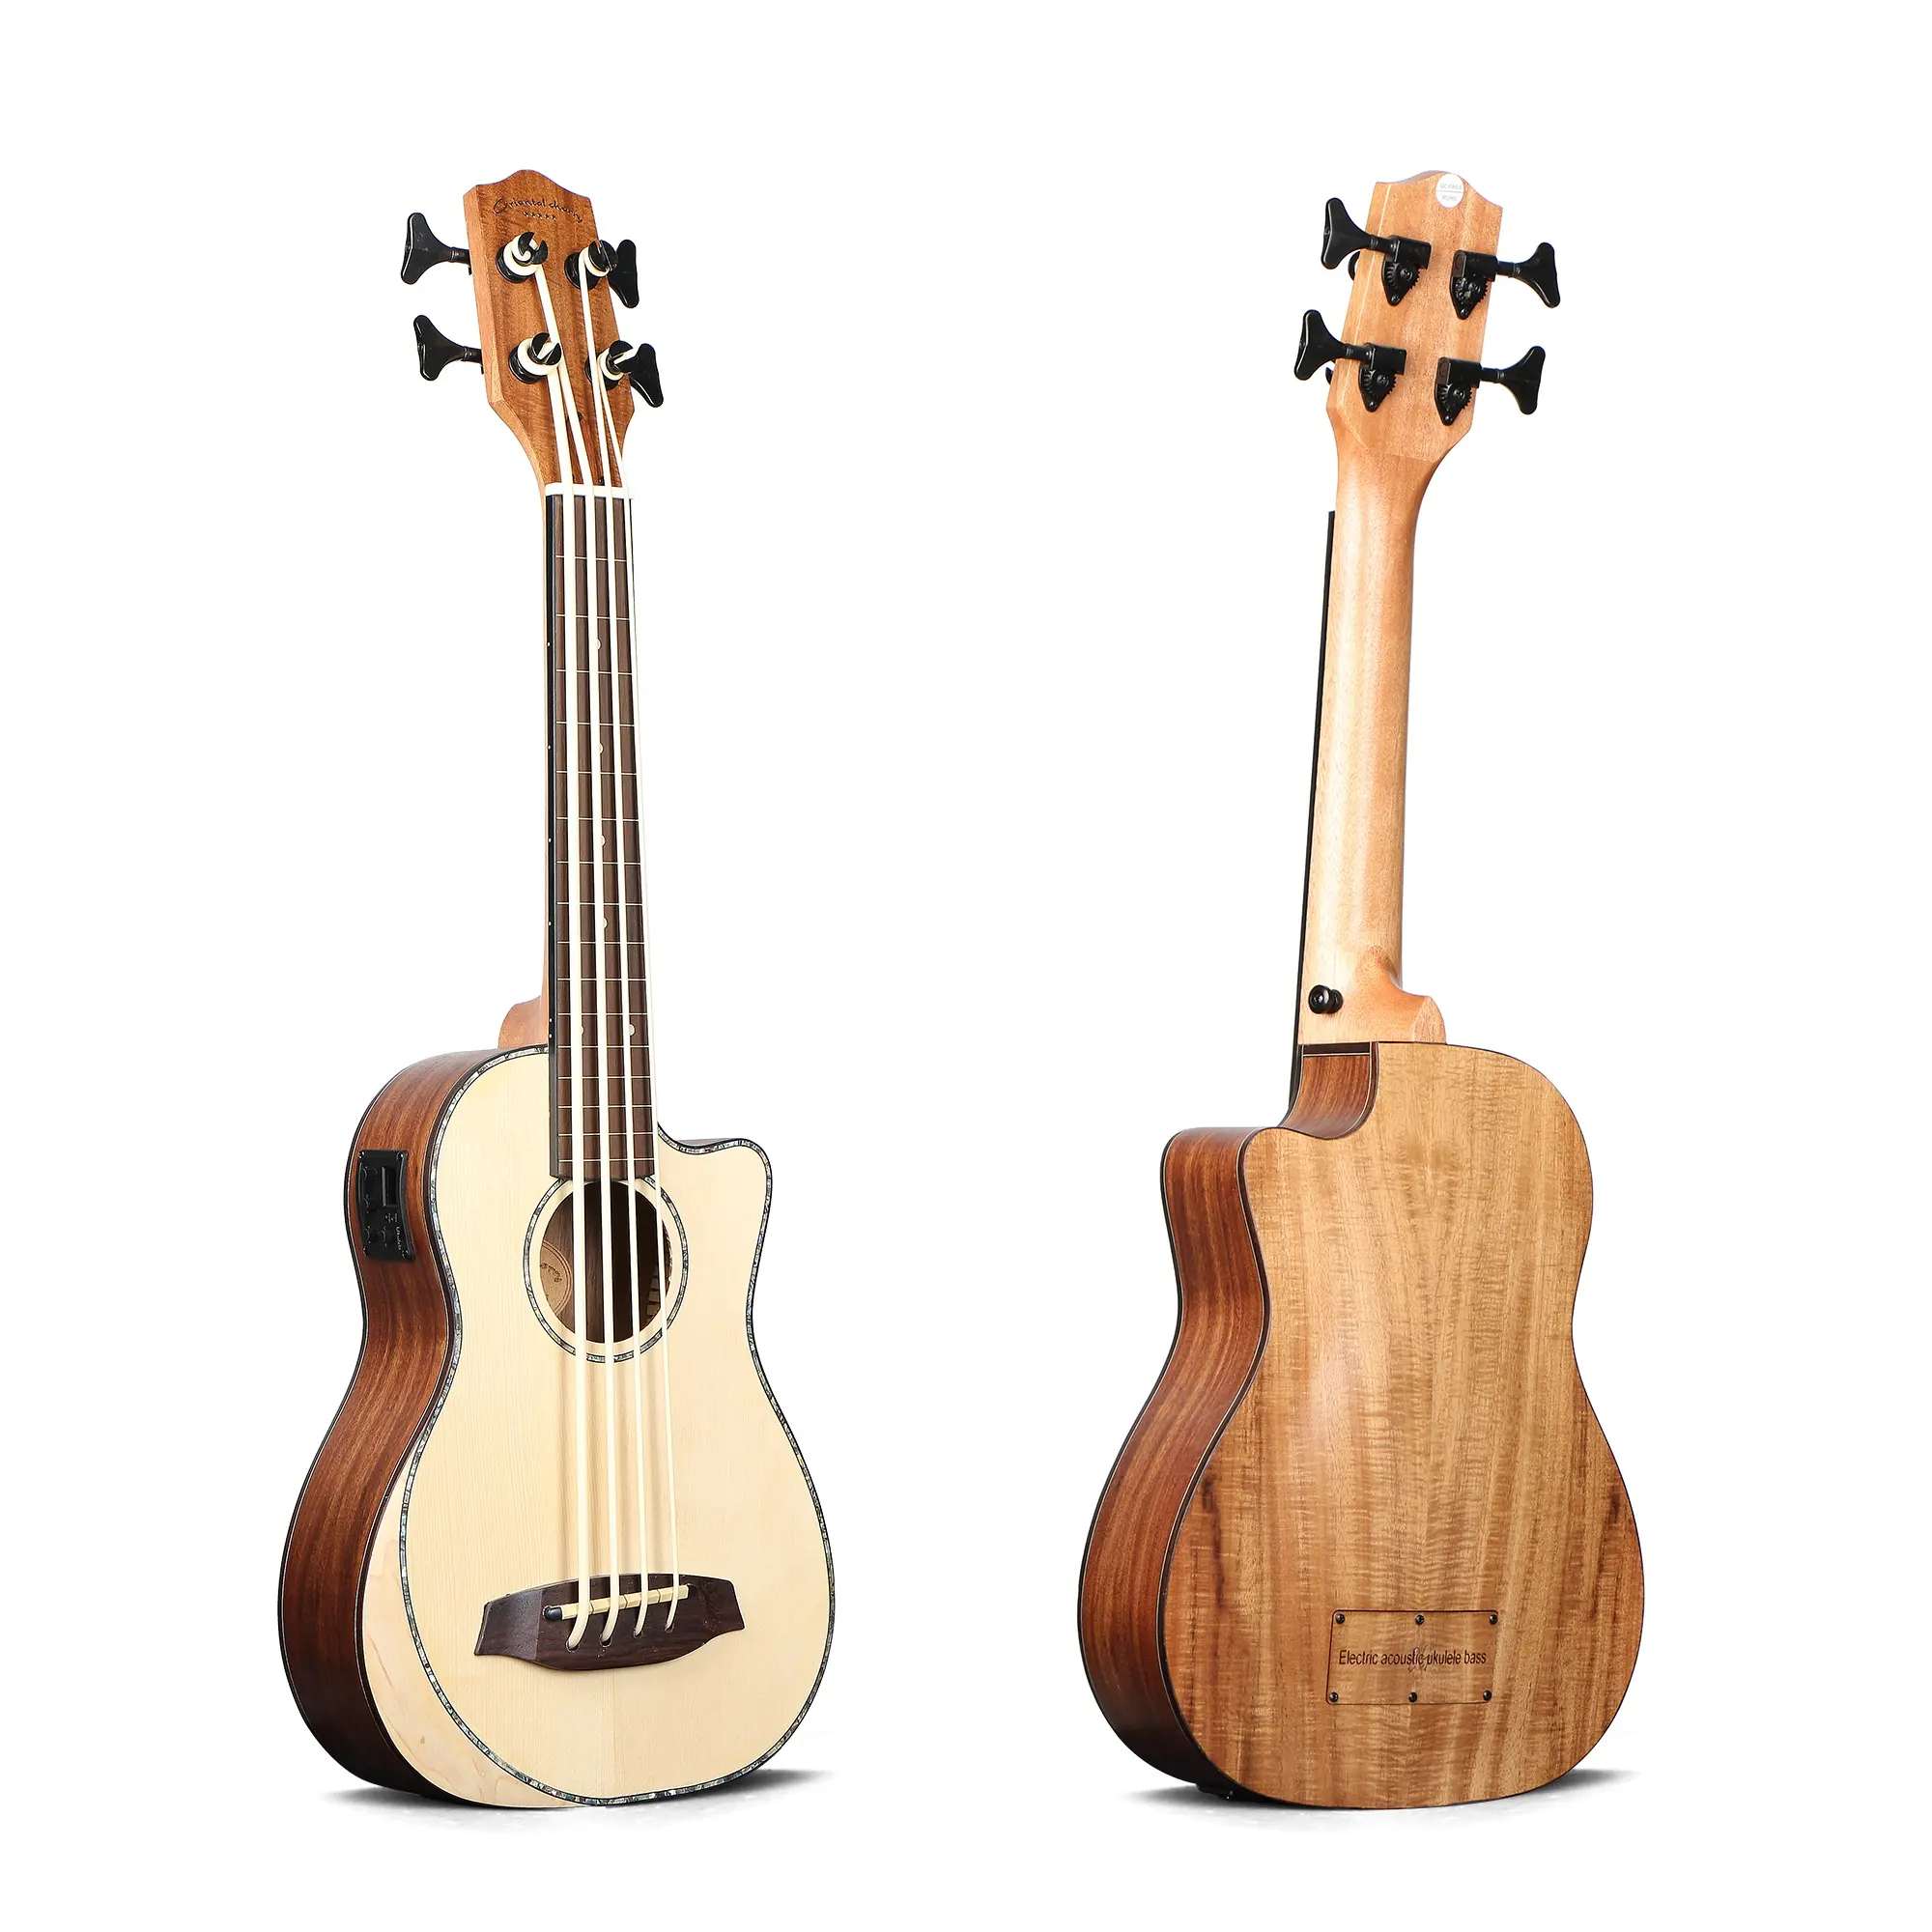 Mr. Mai — basse ukulele mat faits main de haute qualité, avec tube résistant de 30 pouces, usine chinoise